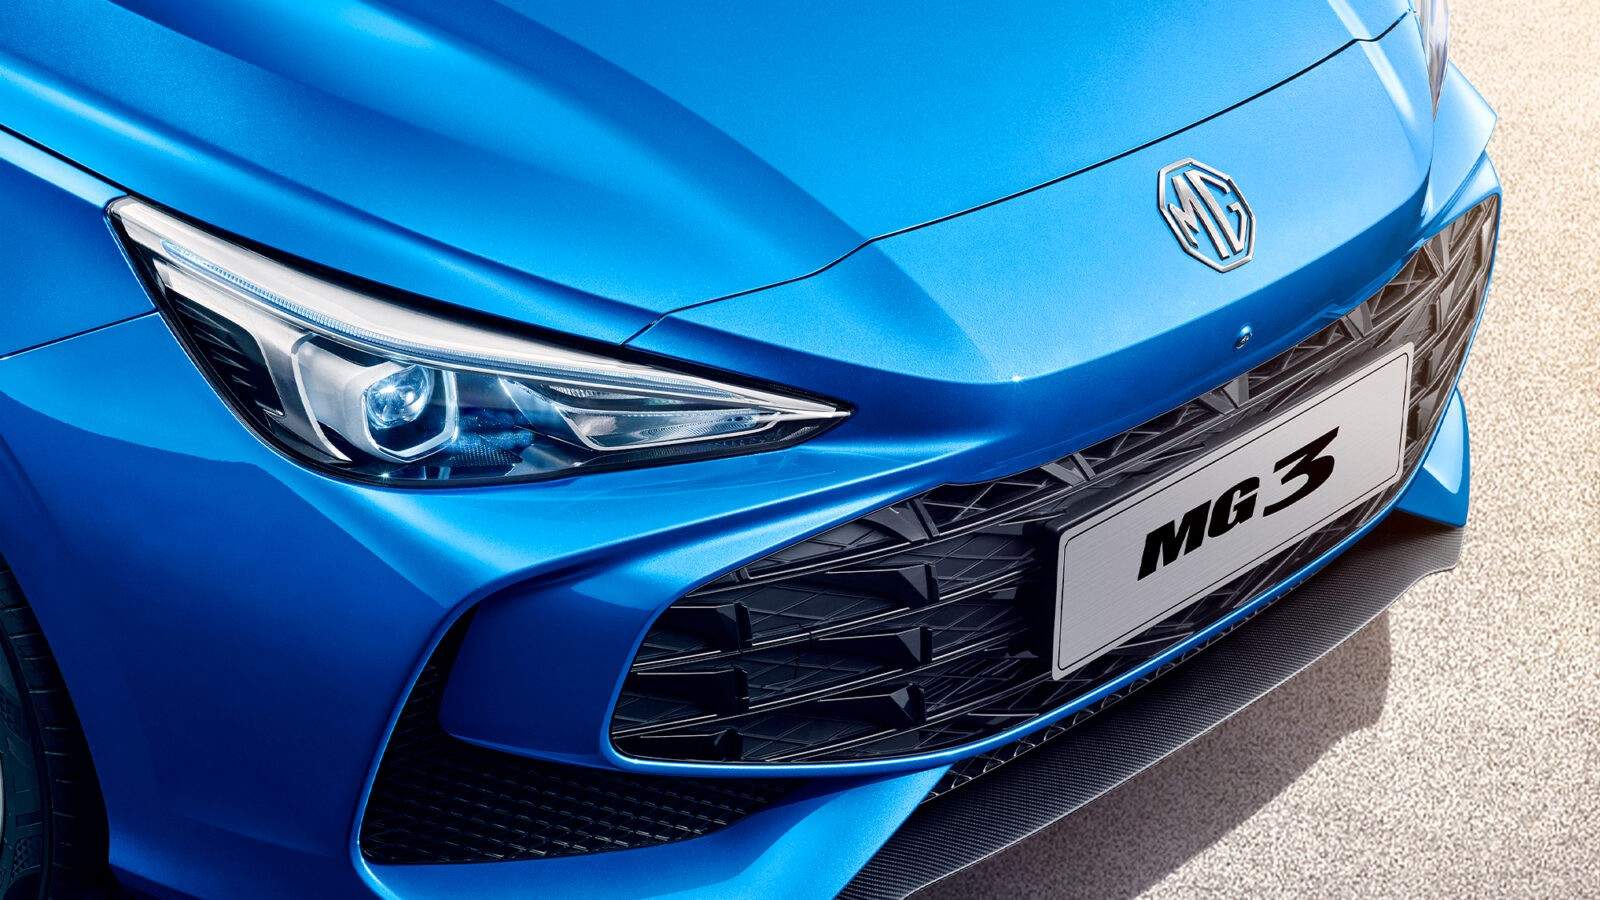 El MG3 Hybrid tiene un rival inesperado, más calidad a precio inmejorable